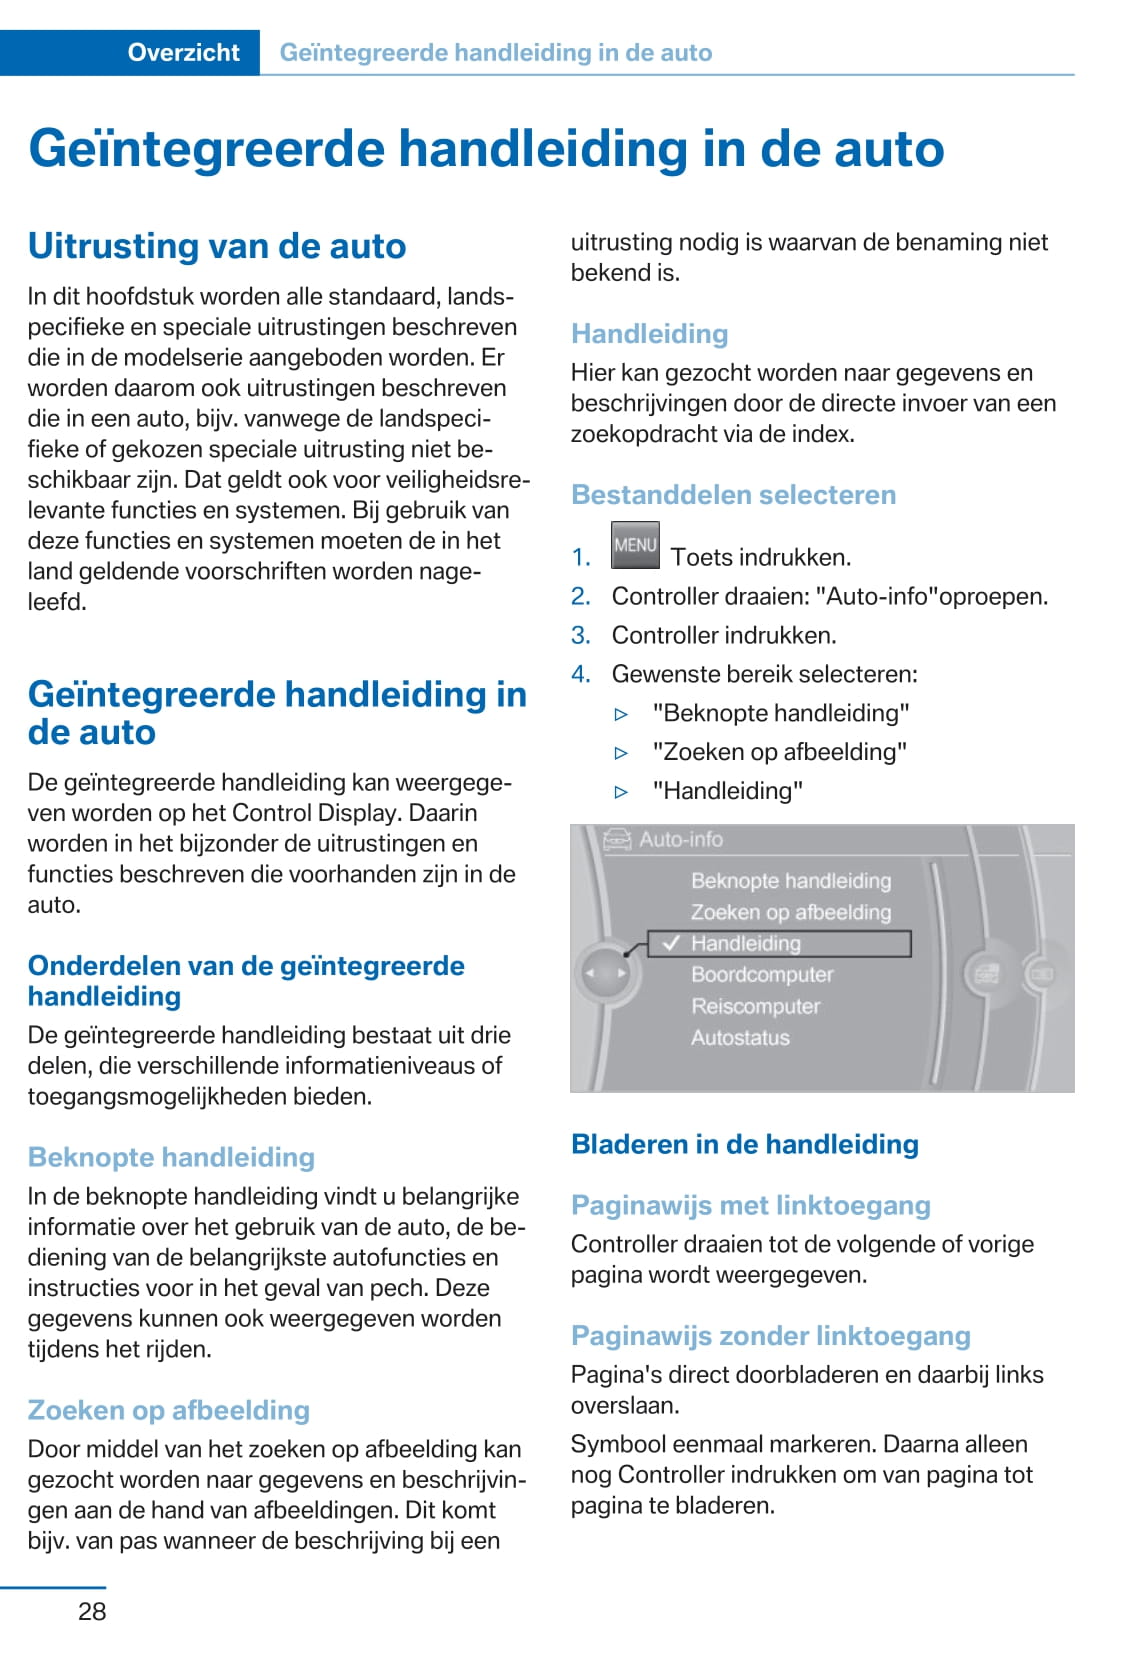 2015 BMW 2 Series Bedienungsanleitung | Niederländisch